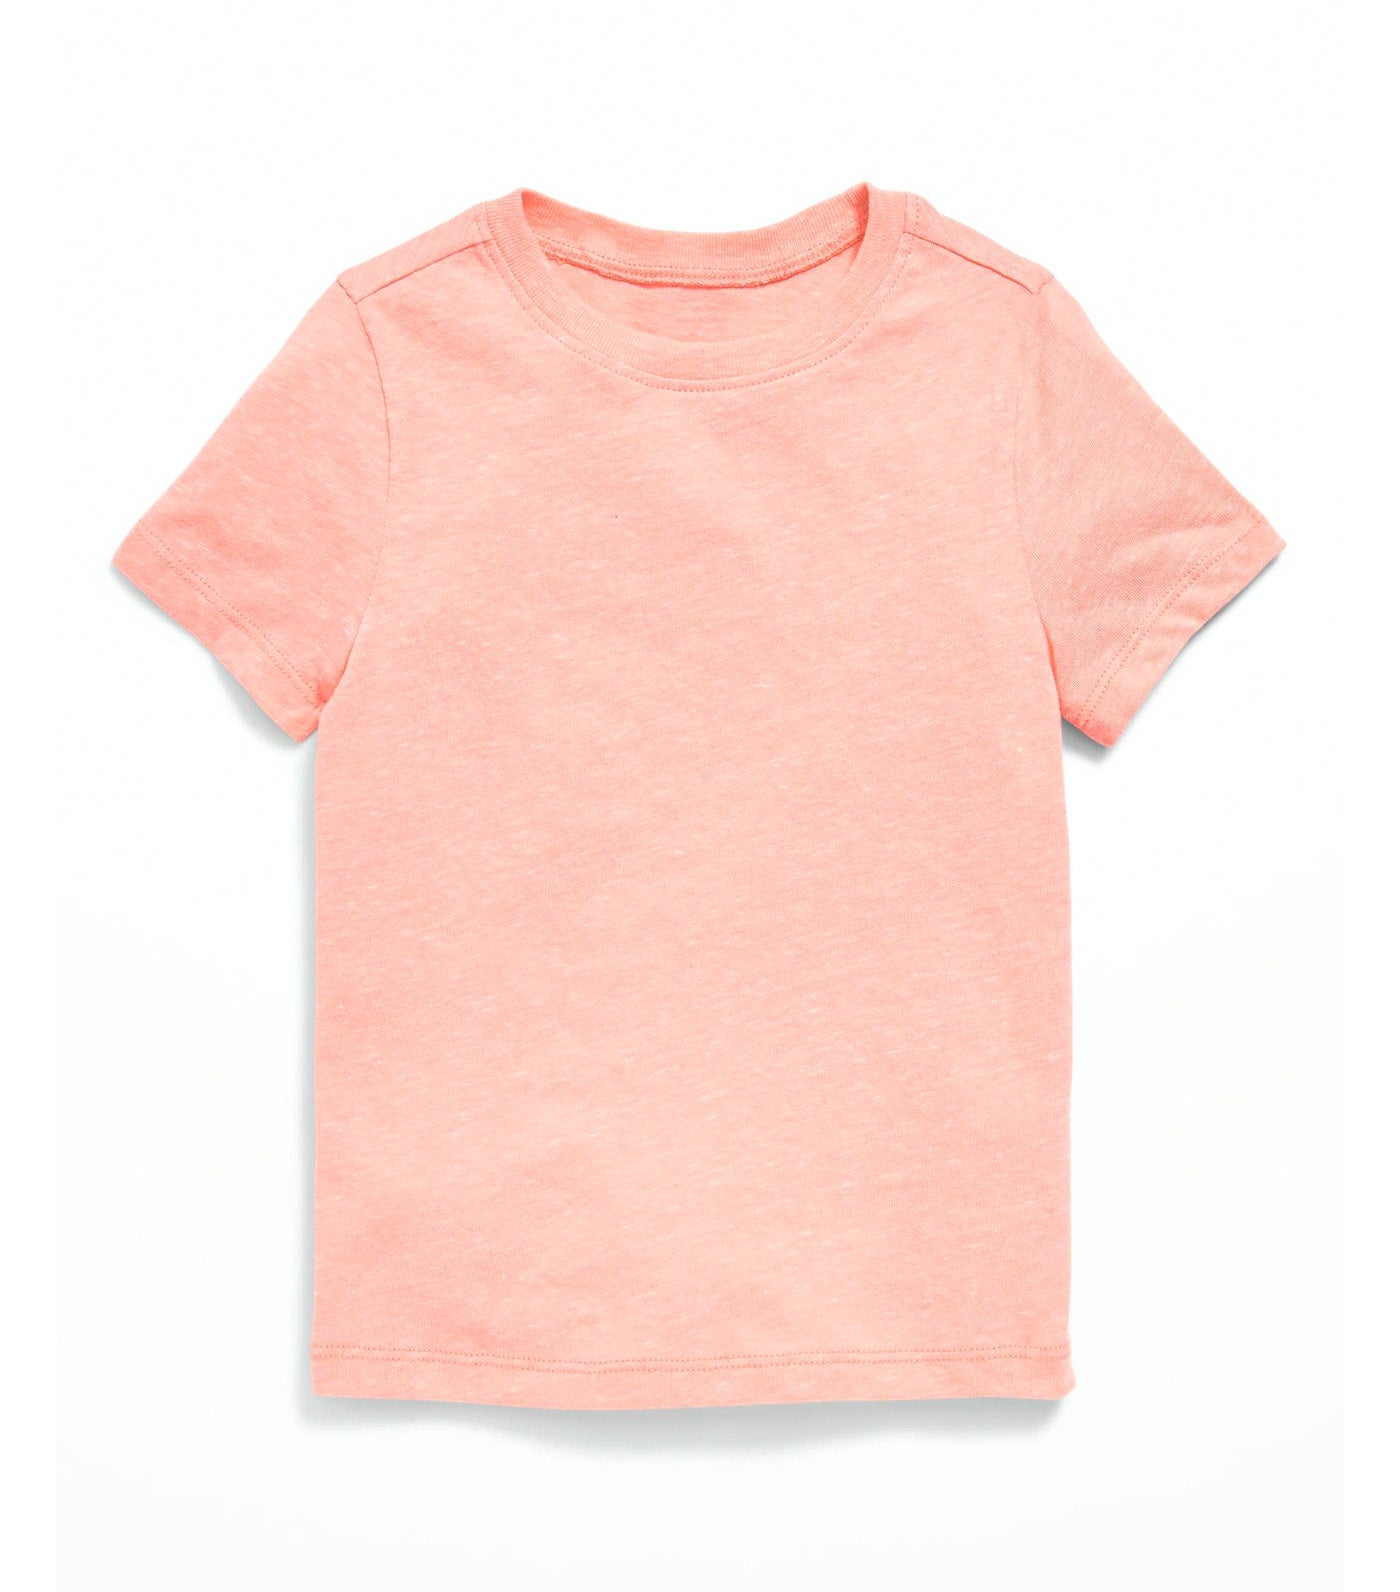 Short-Sleeve T-Shirt for Toddler Boys - Nectar